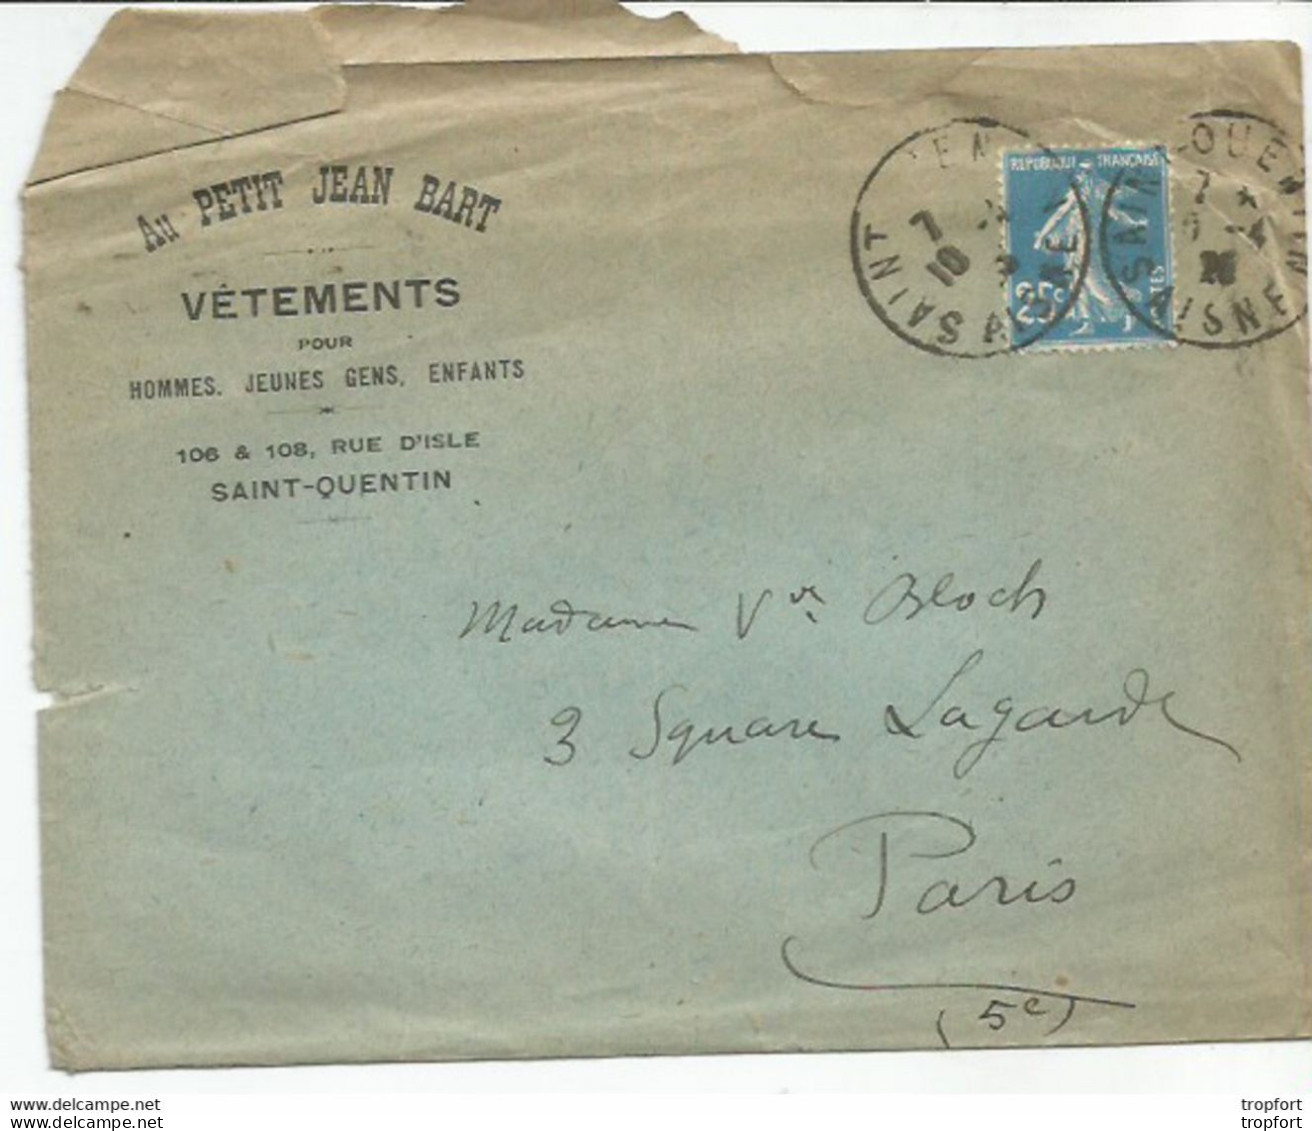 F12 / Enveloppe Publicitaire AU PETIT JEAN BART SAINT-QUENTIN Timbre Marianne 1926 - Advertising